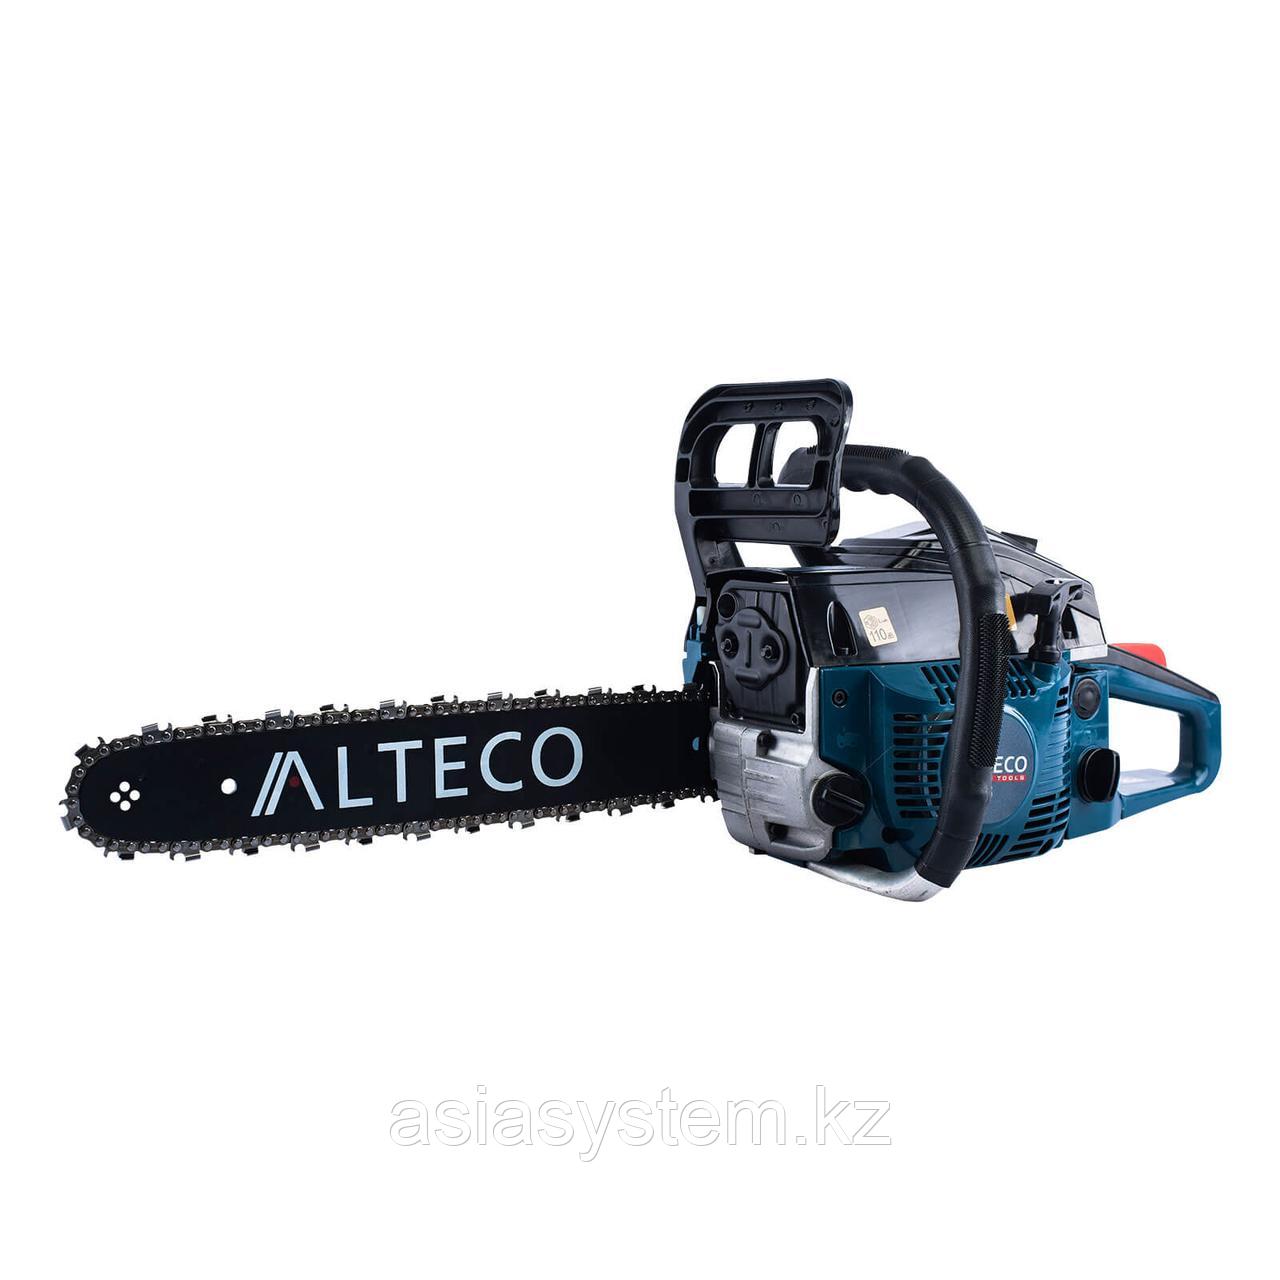 Бензопила ALTECO Promo GCS 2306 (GCS 40) 27194 (Шина: 40 см.; Мощность: 3.0 лс; Бак: 0.55 л; Вес: 7 кг)